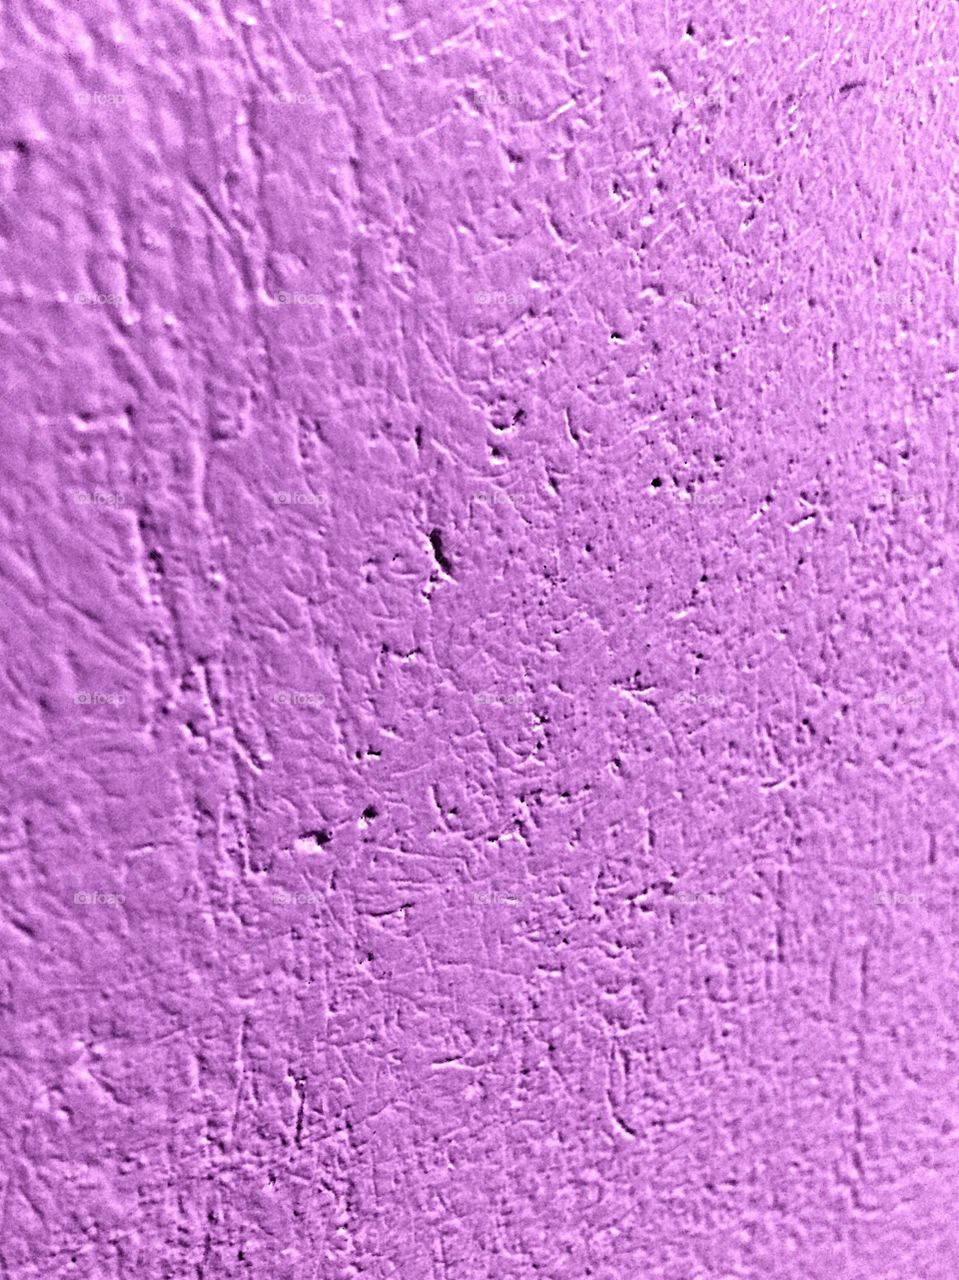 Purple paint on concrete 